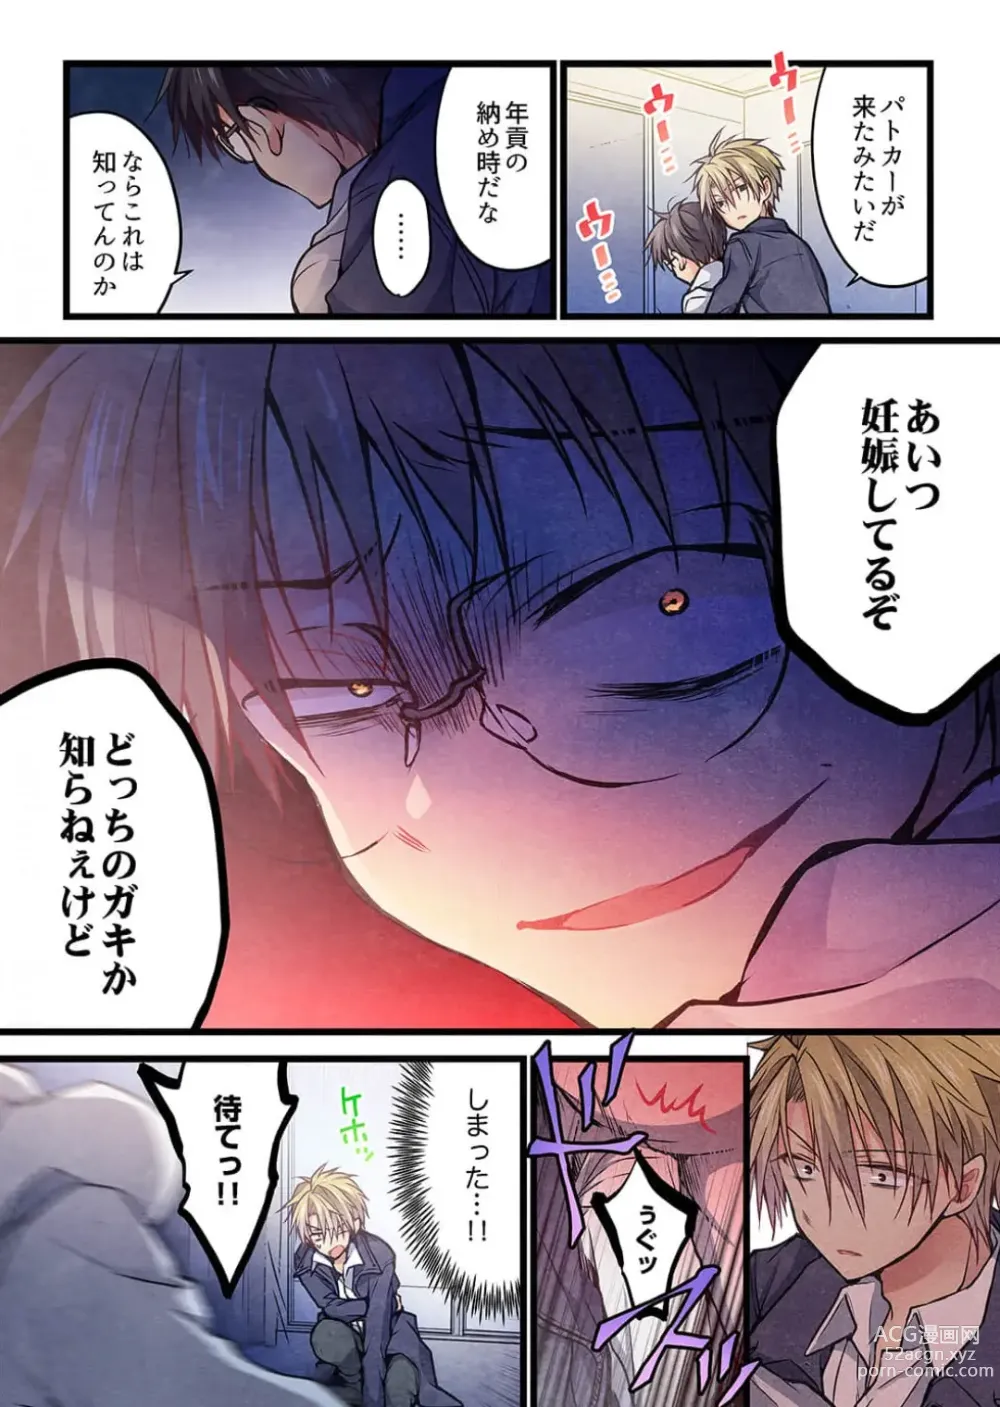 Page 9 of manga Kimi ga Sore o Ai to Yonde mo - Even if you call it love 38